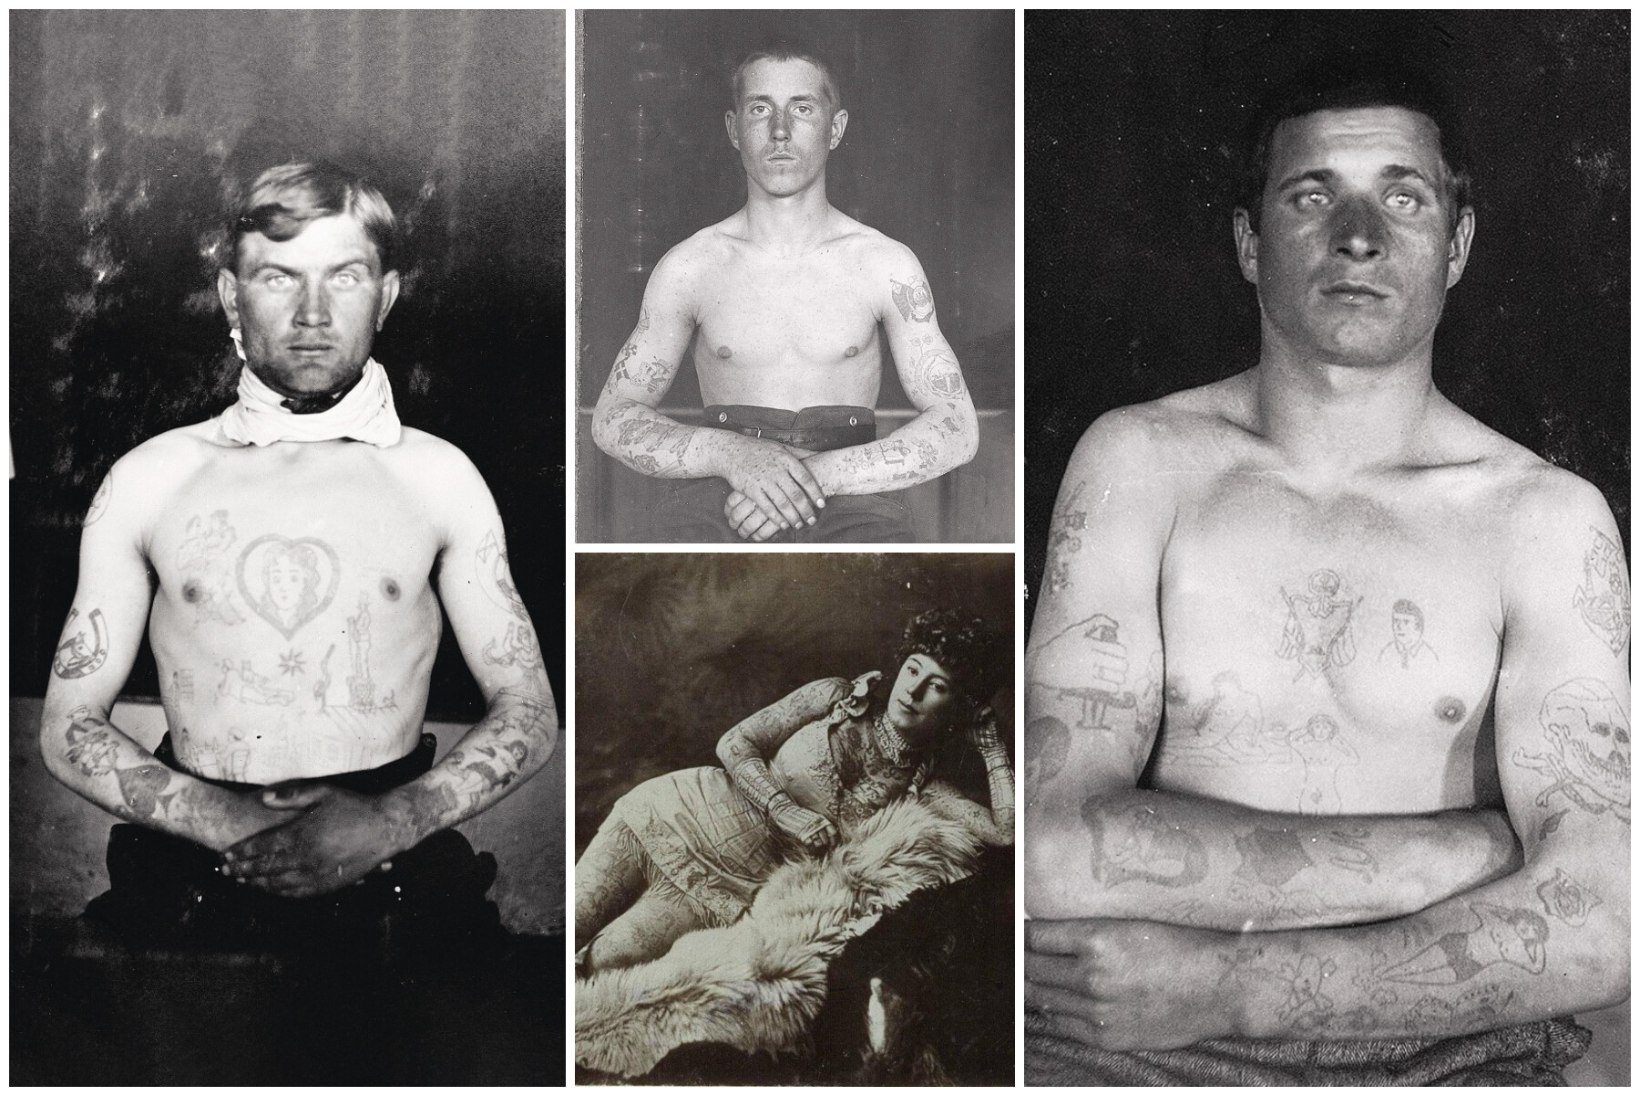 Pilte täis keha ajas hirmu nahka – tätoveeringud okupatsioonieelses Eestis